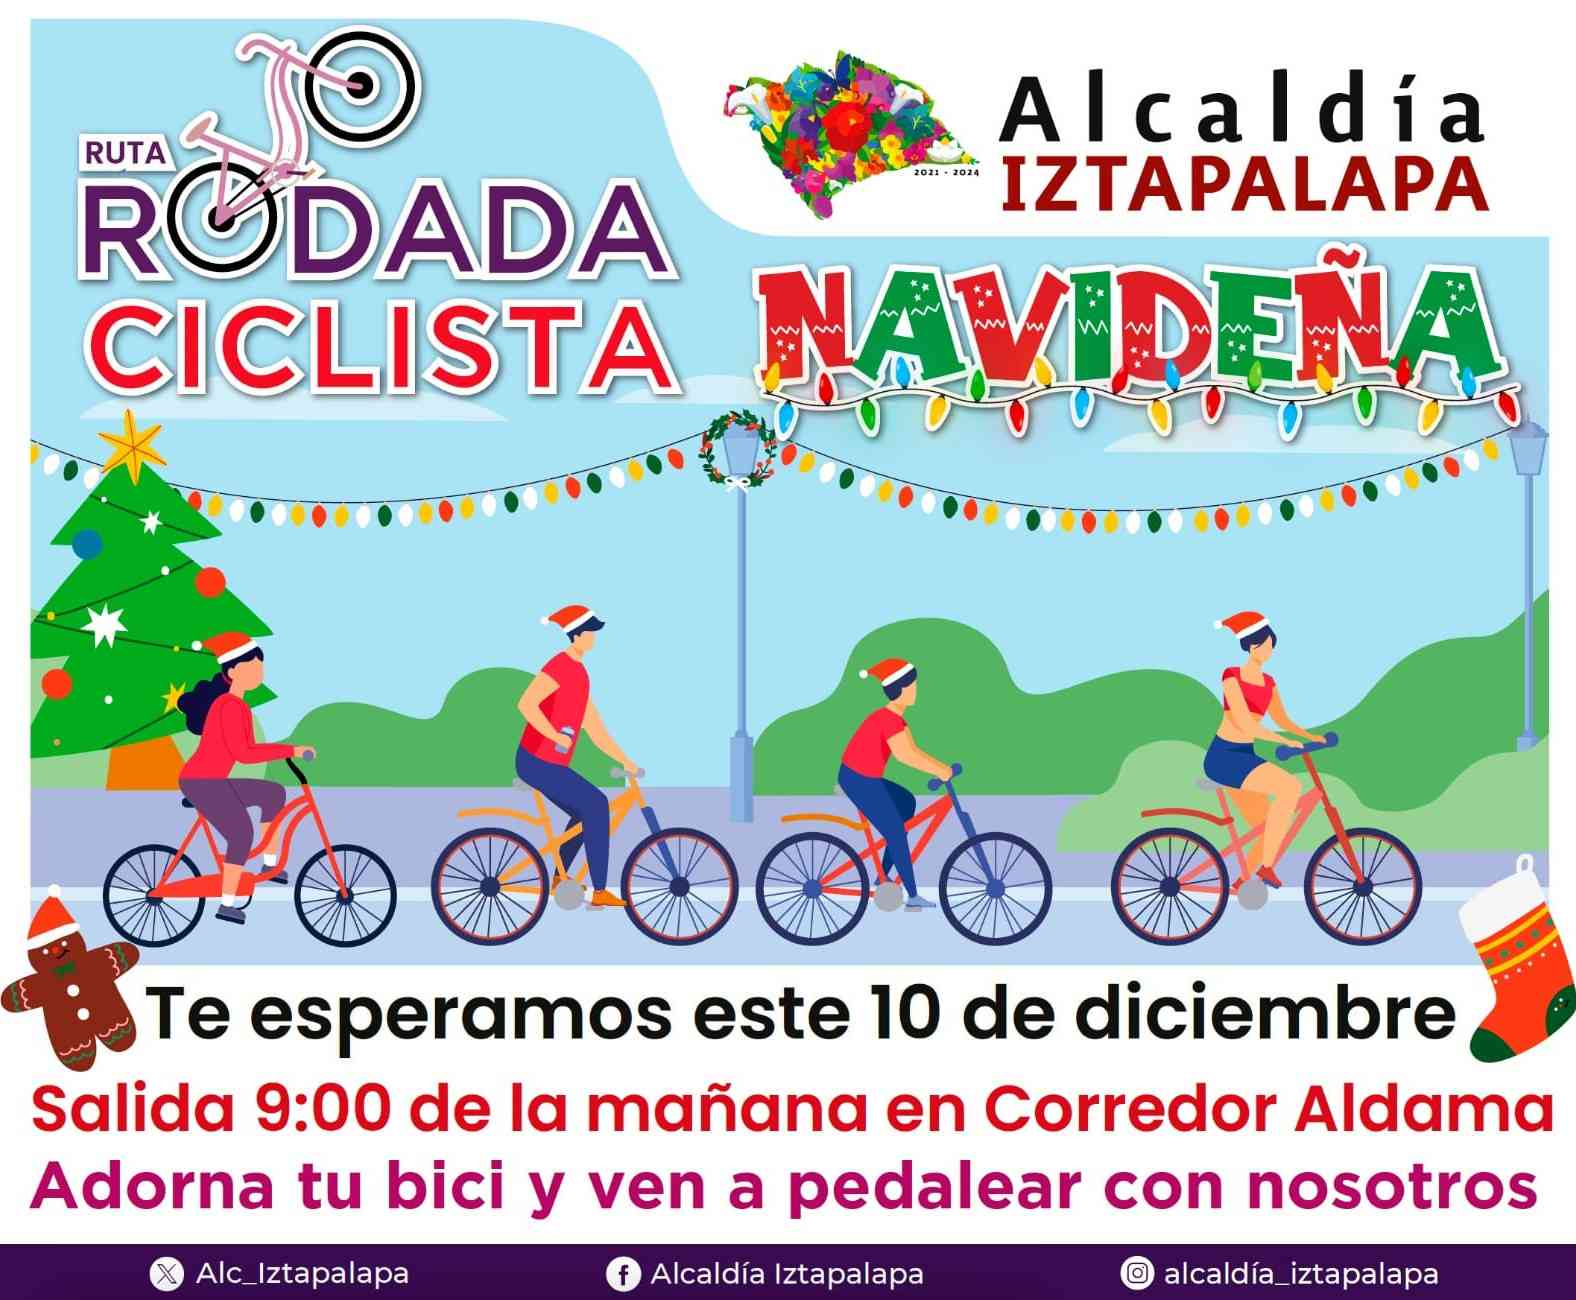 Rodada ciclista navideña en Iztapalapa